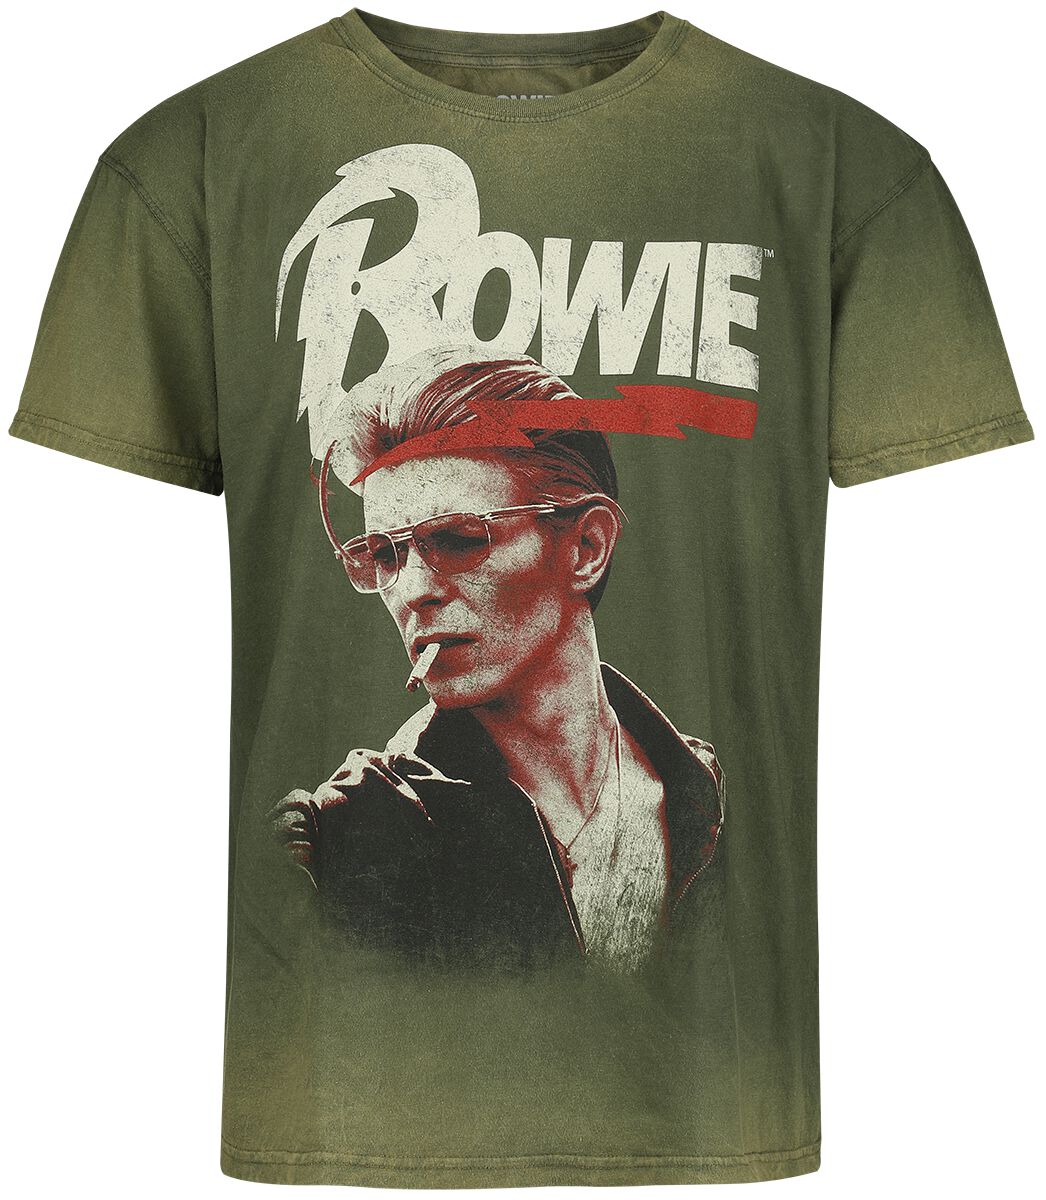 David Bowie T-Shirt - Smoking - S bis 3XL - für Männer - Größe 3XL - grün  - Lizenziertes Merchandise!